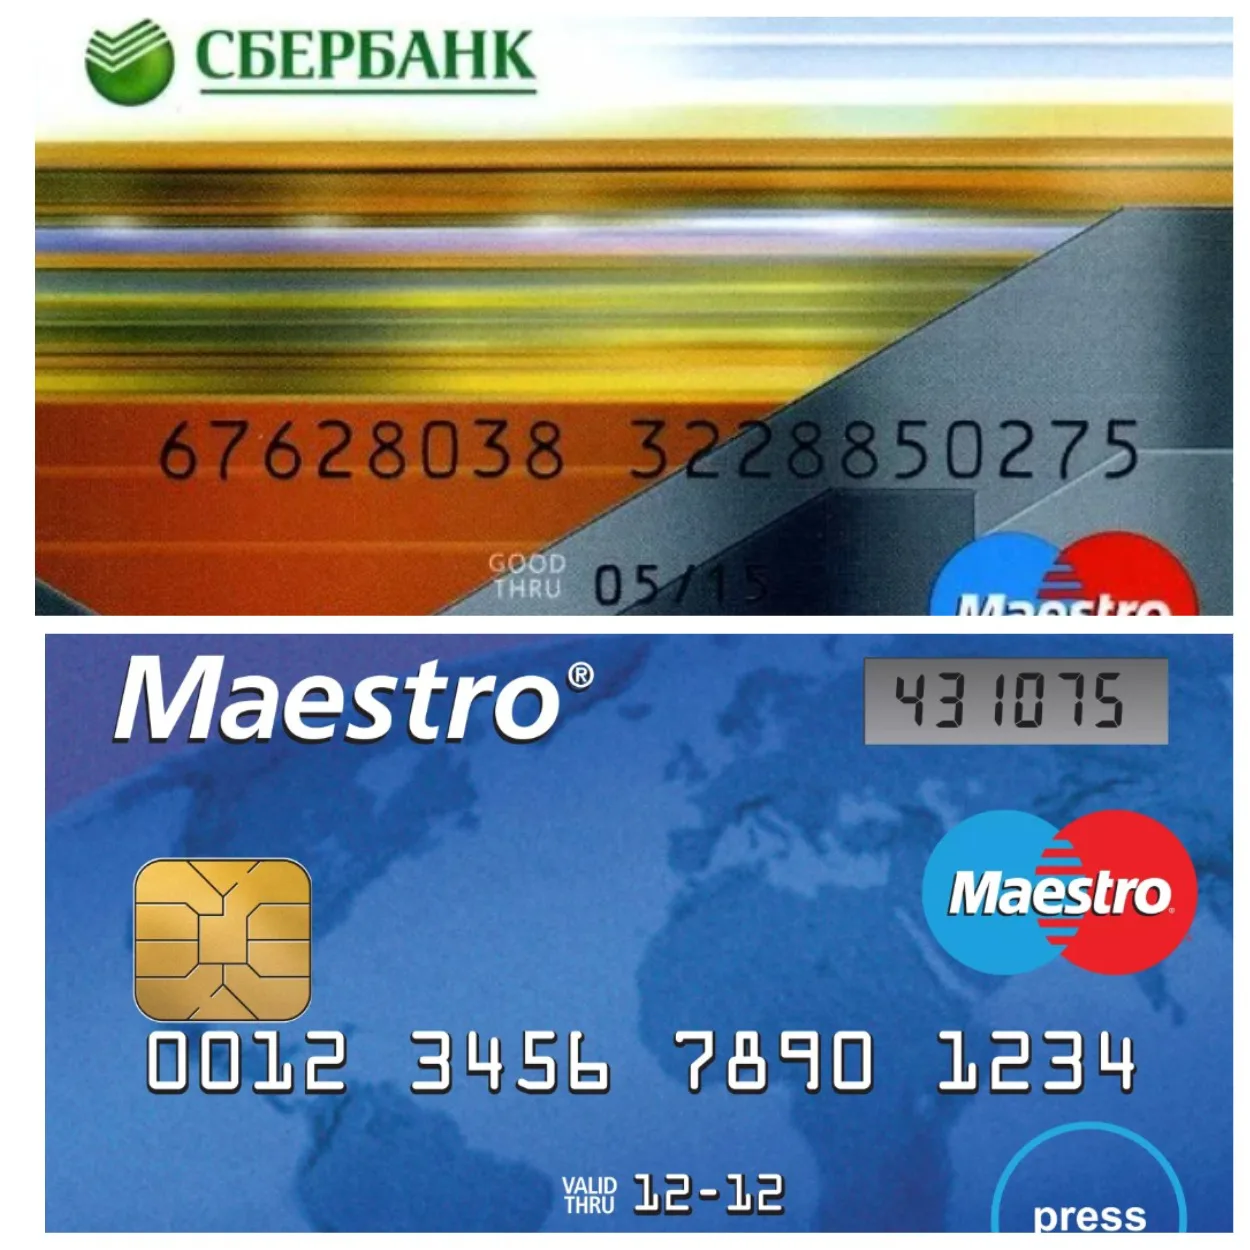 Как узнать номер карты через мобильный банк Сбербанка?